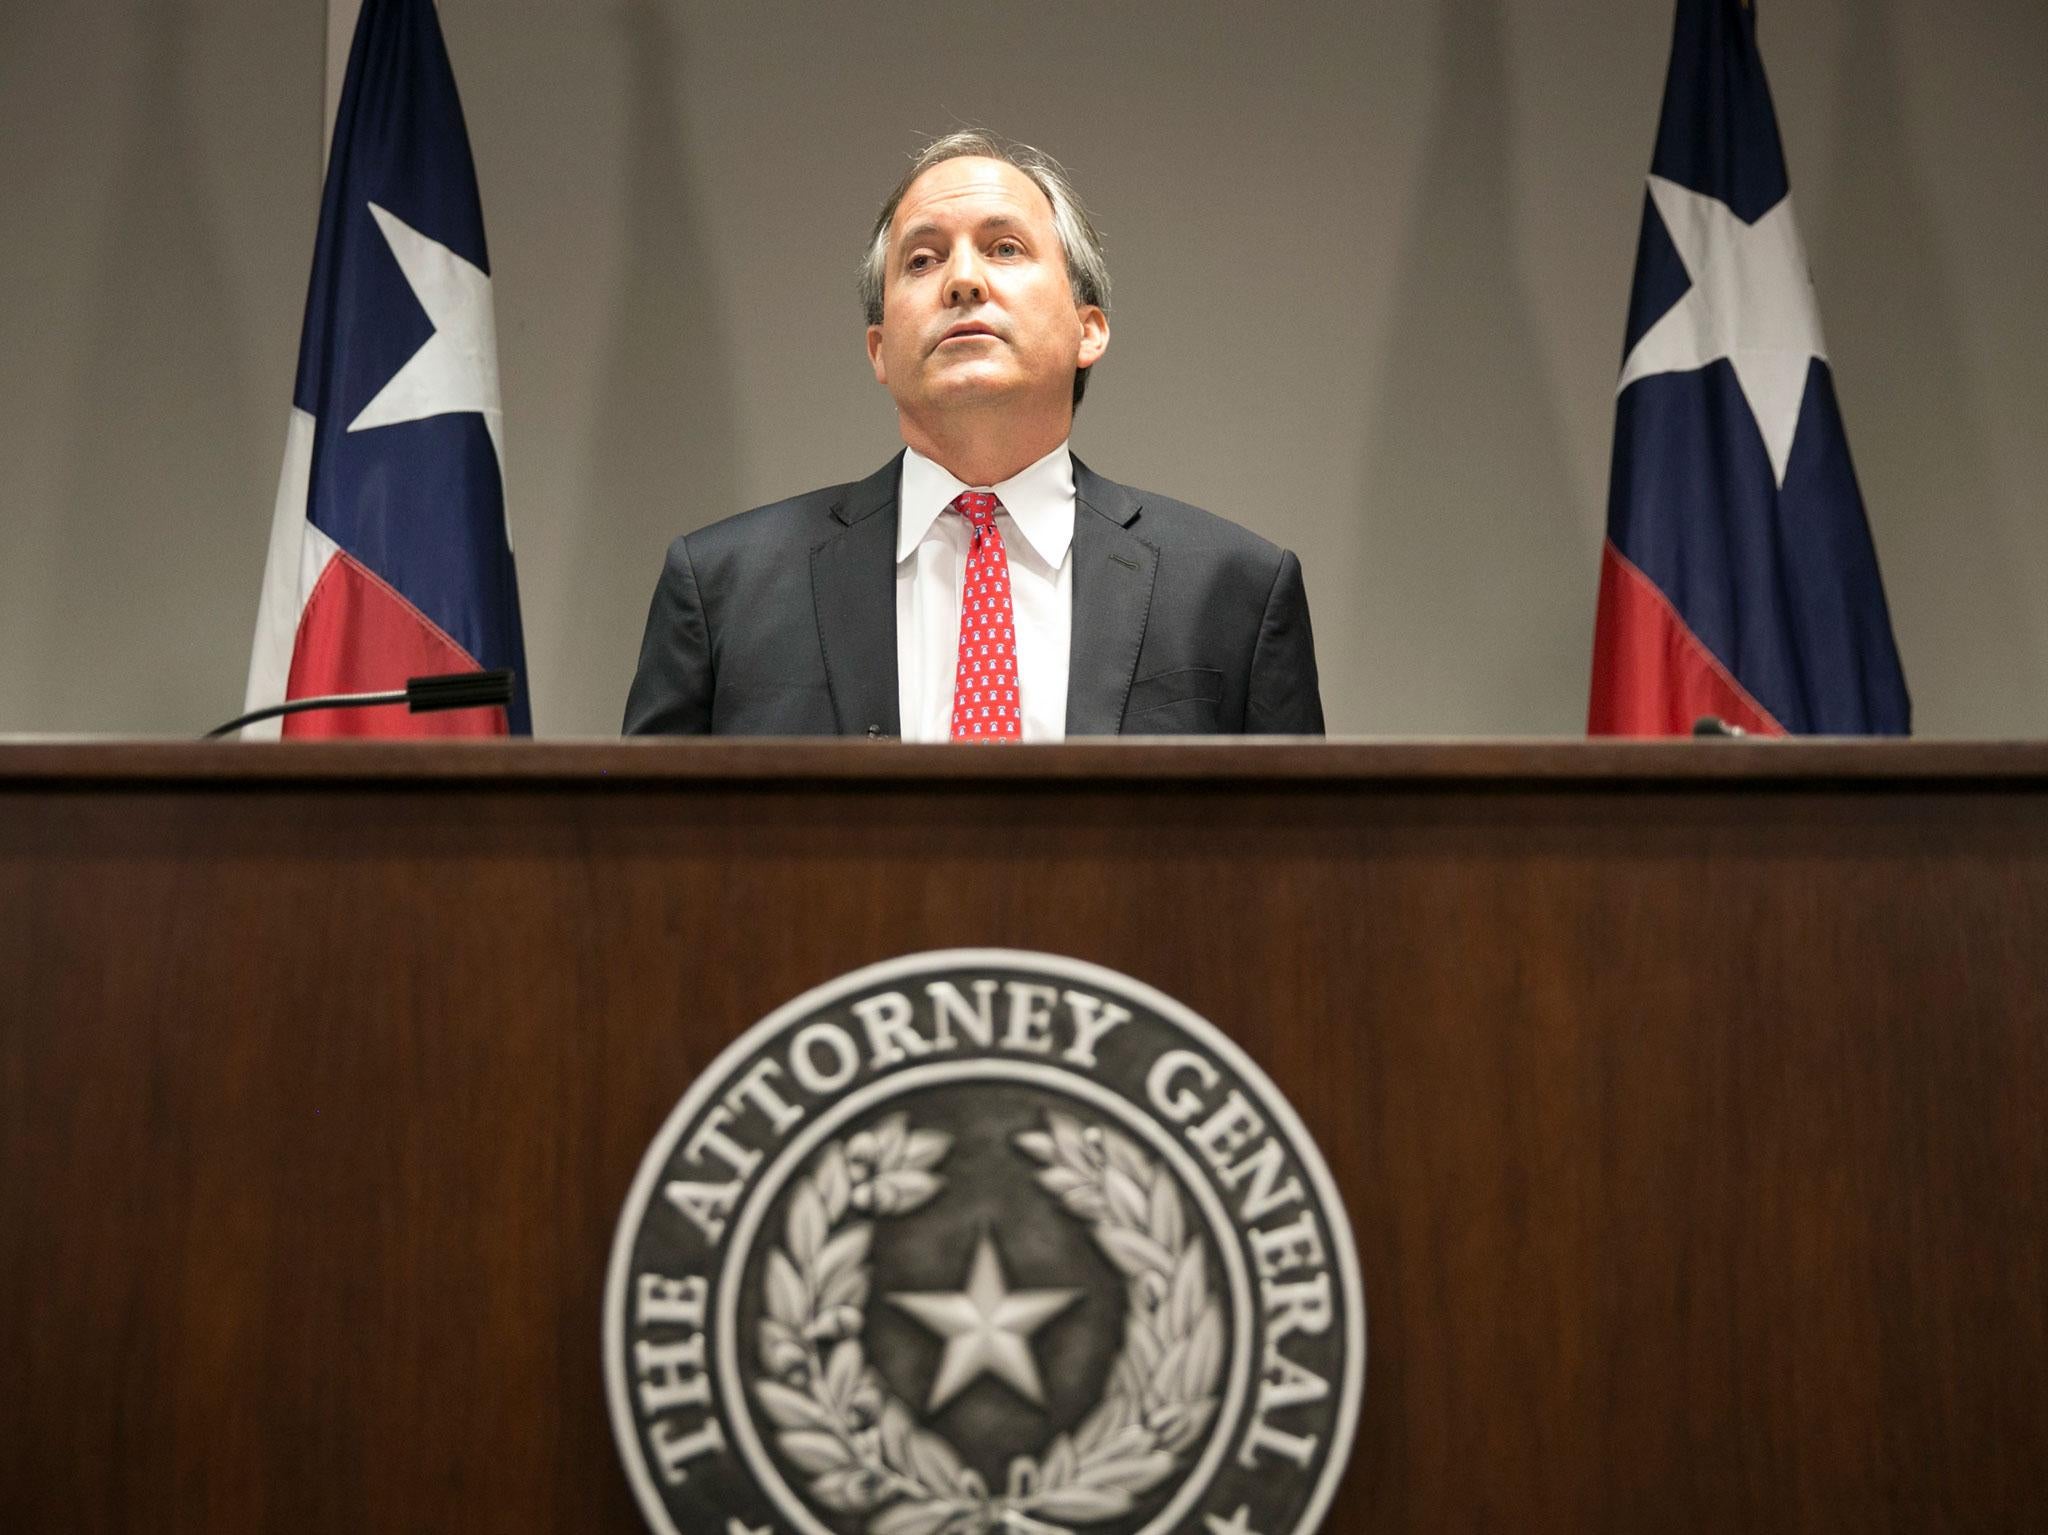 Texas attorney general Ken Paxton